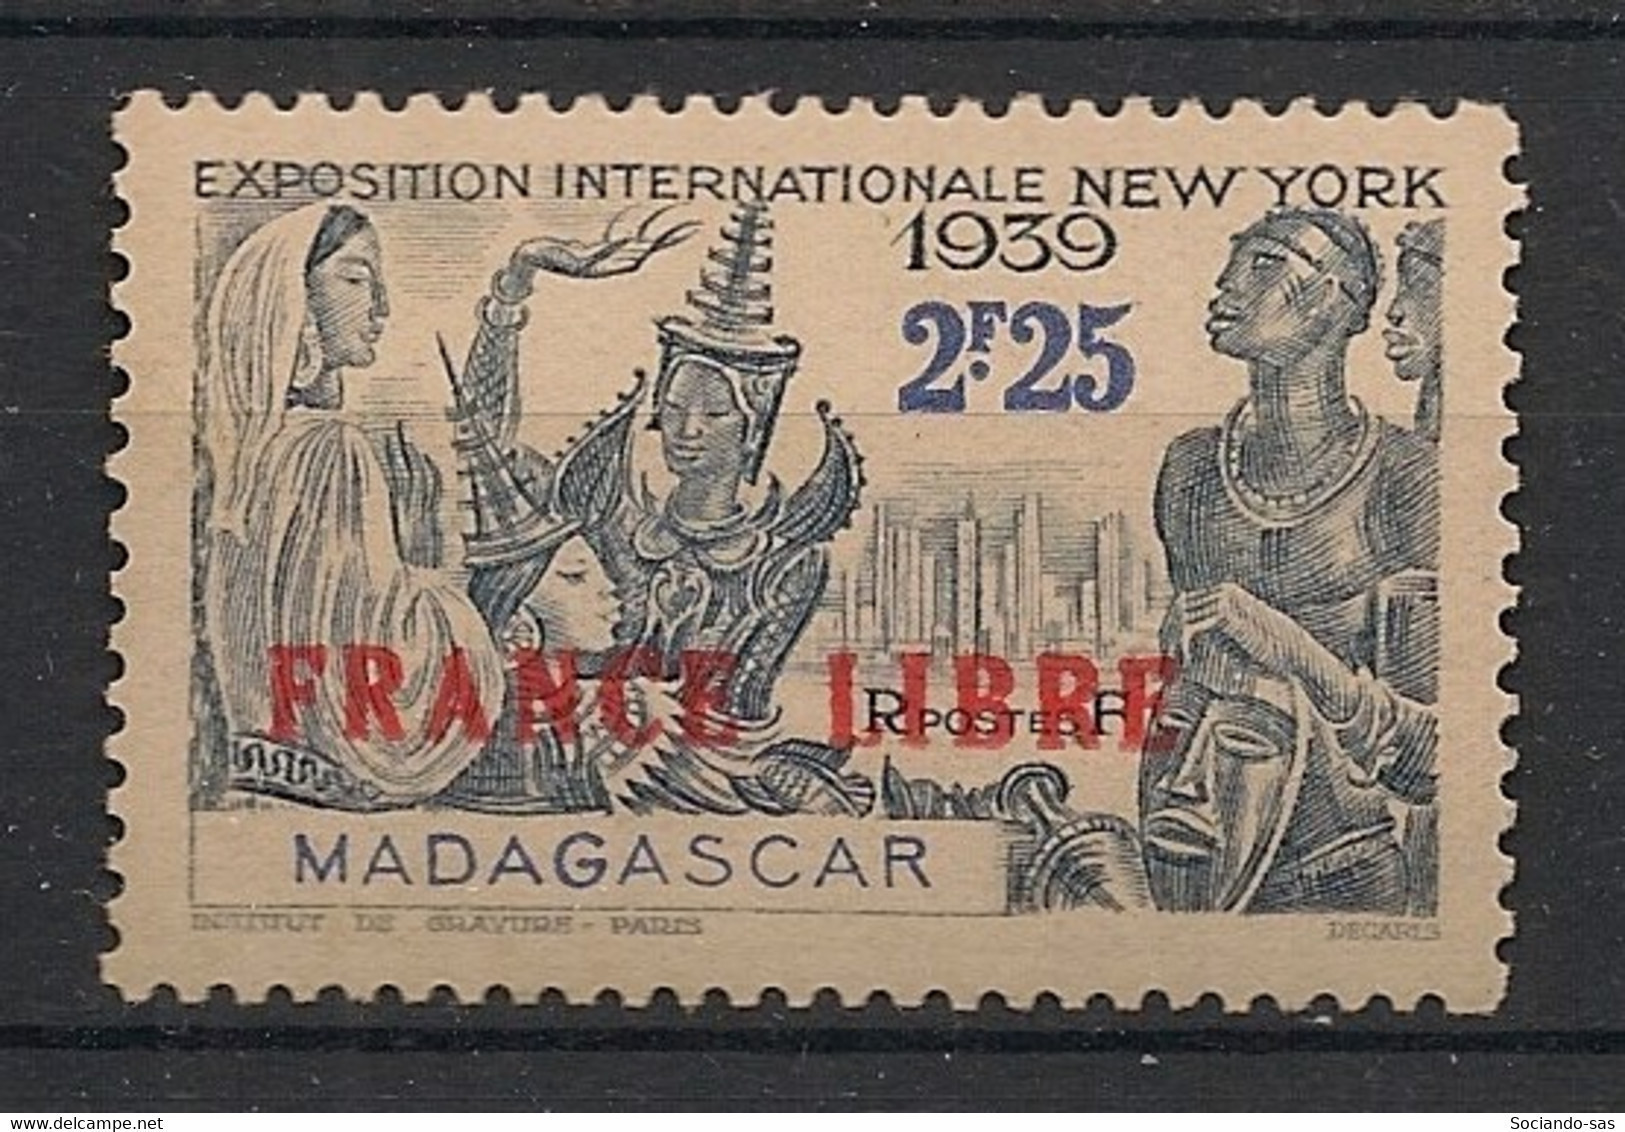 MADAGASCAR - 1942 - N°YT. 238 - France Libre - Neuf GC** / MNH / Postfrisch - Ungebraucht